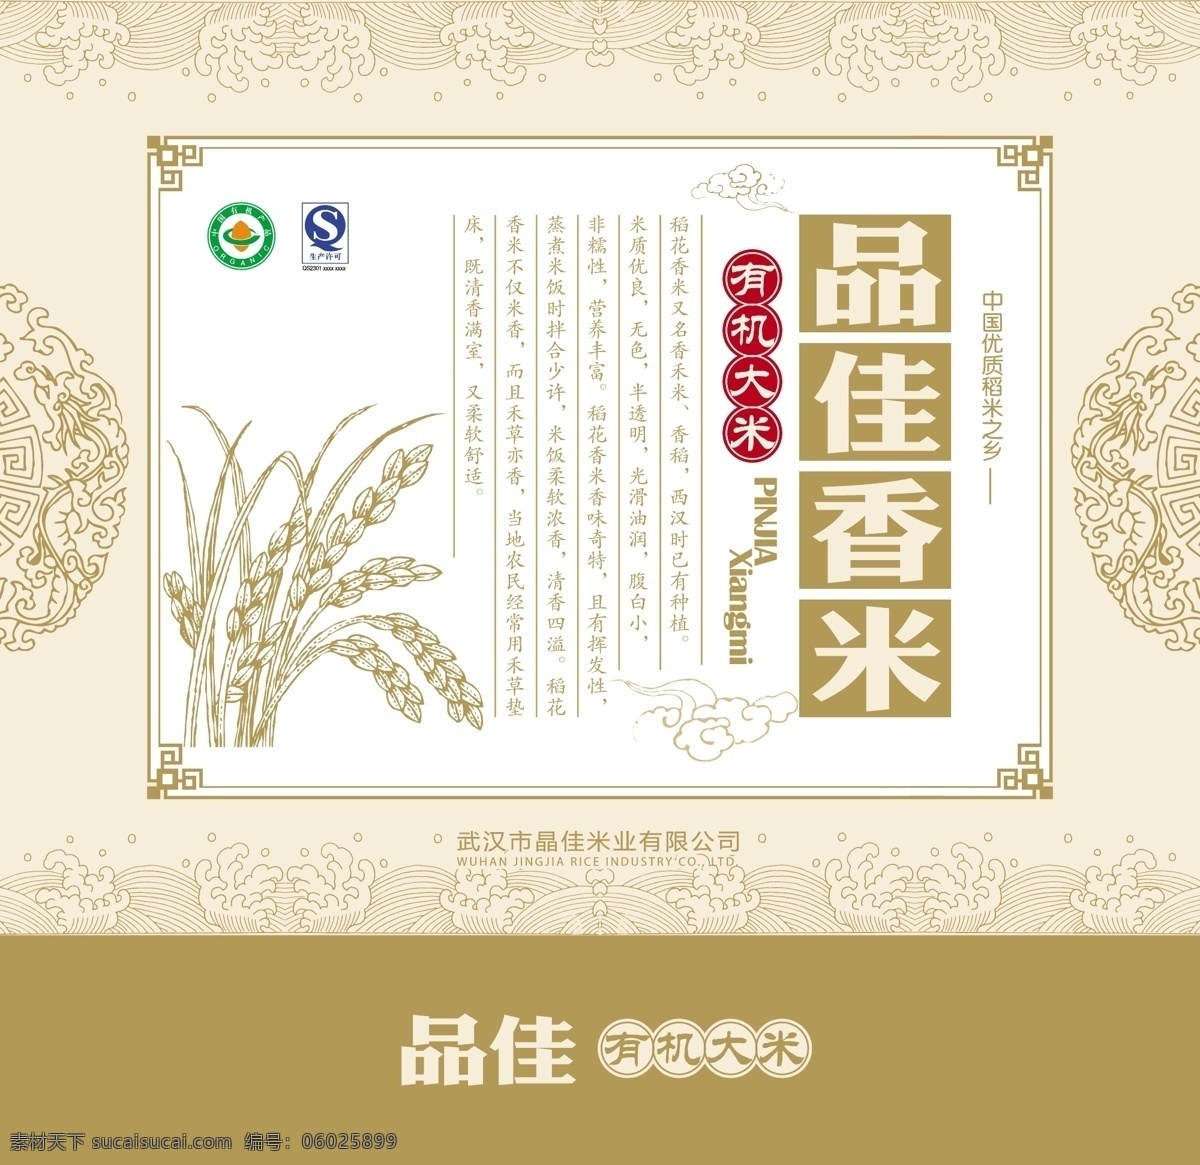 大米广告设计 大米 大米海报 稻谷 粮食 食物 宣传海报 白色